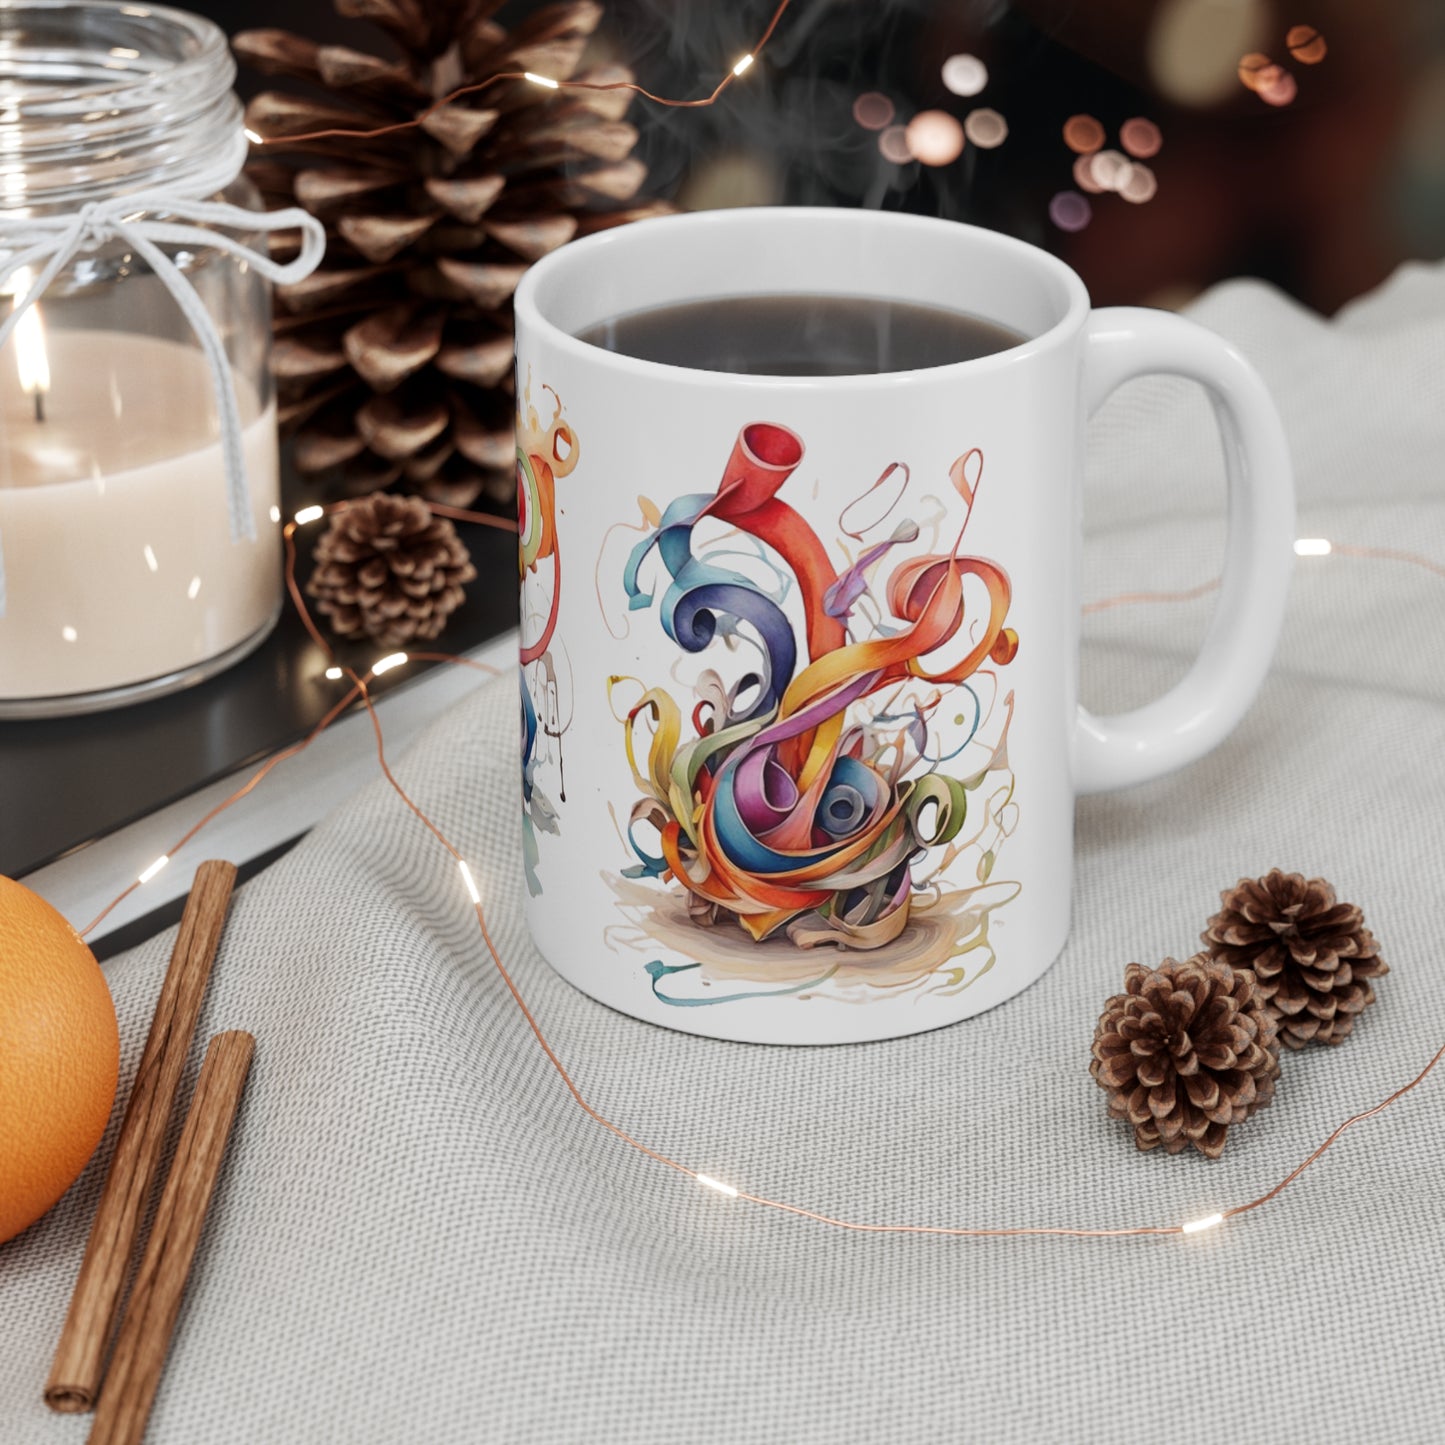 Colourful Messy Art Mug - Ceramic Coffee Mug 11oz